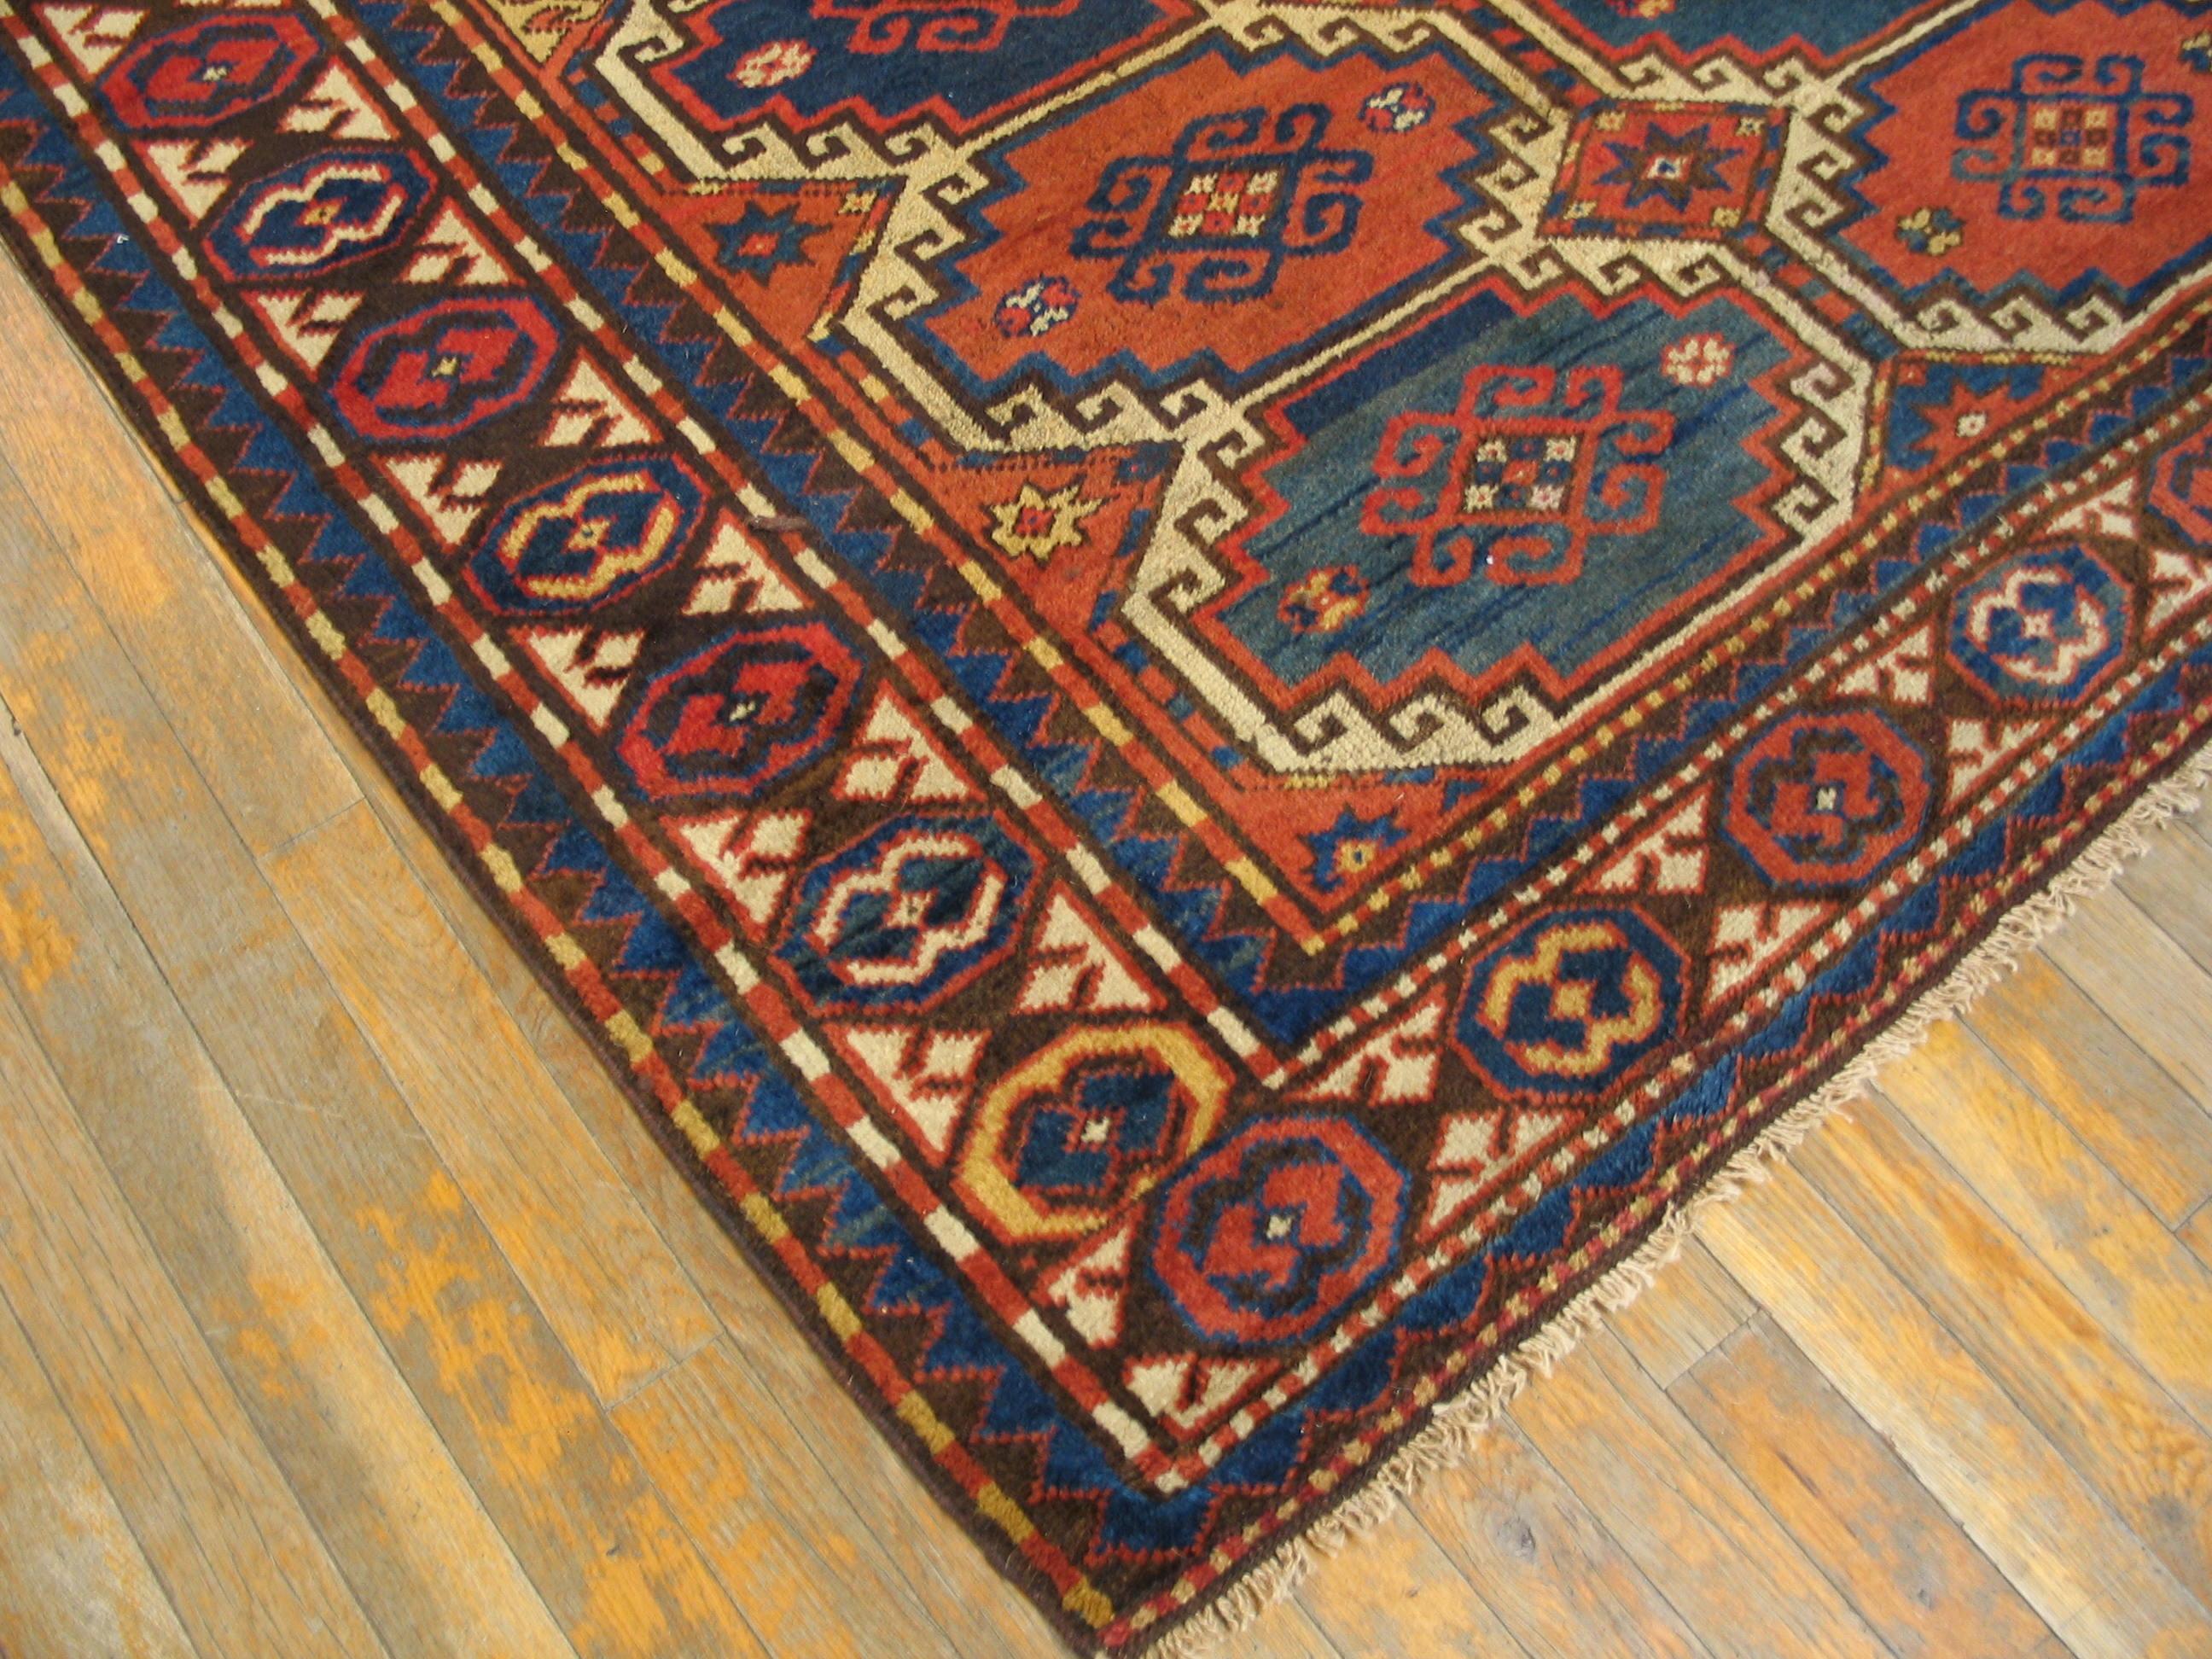 Antique Caucasian rug, measures: 5'0